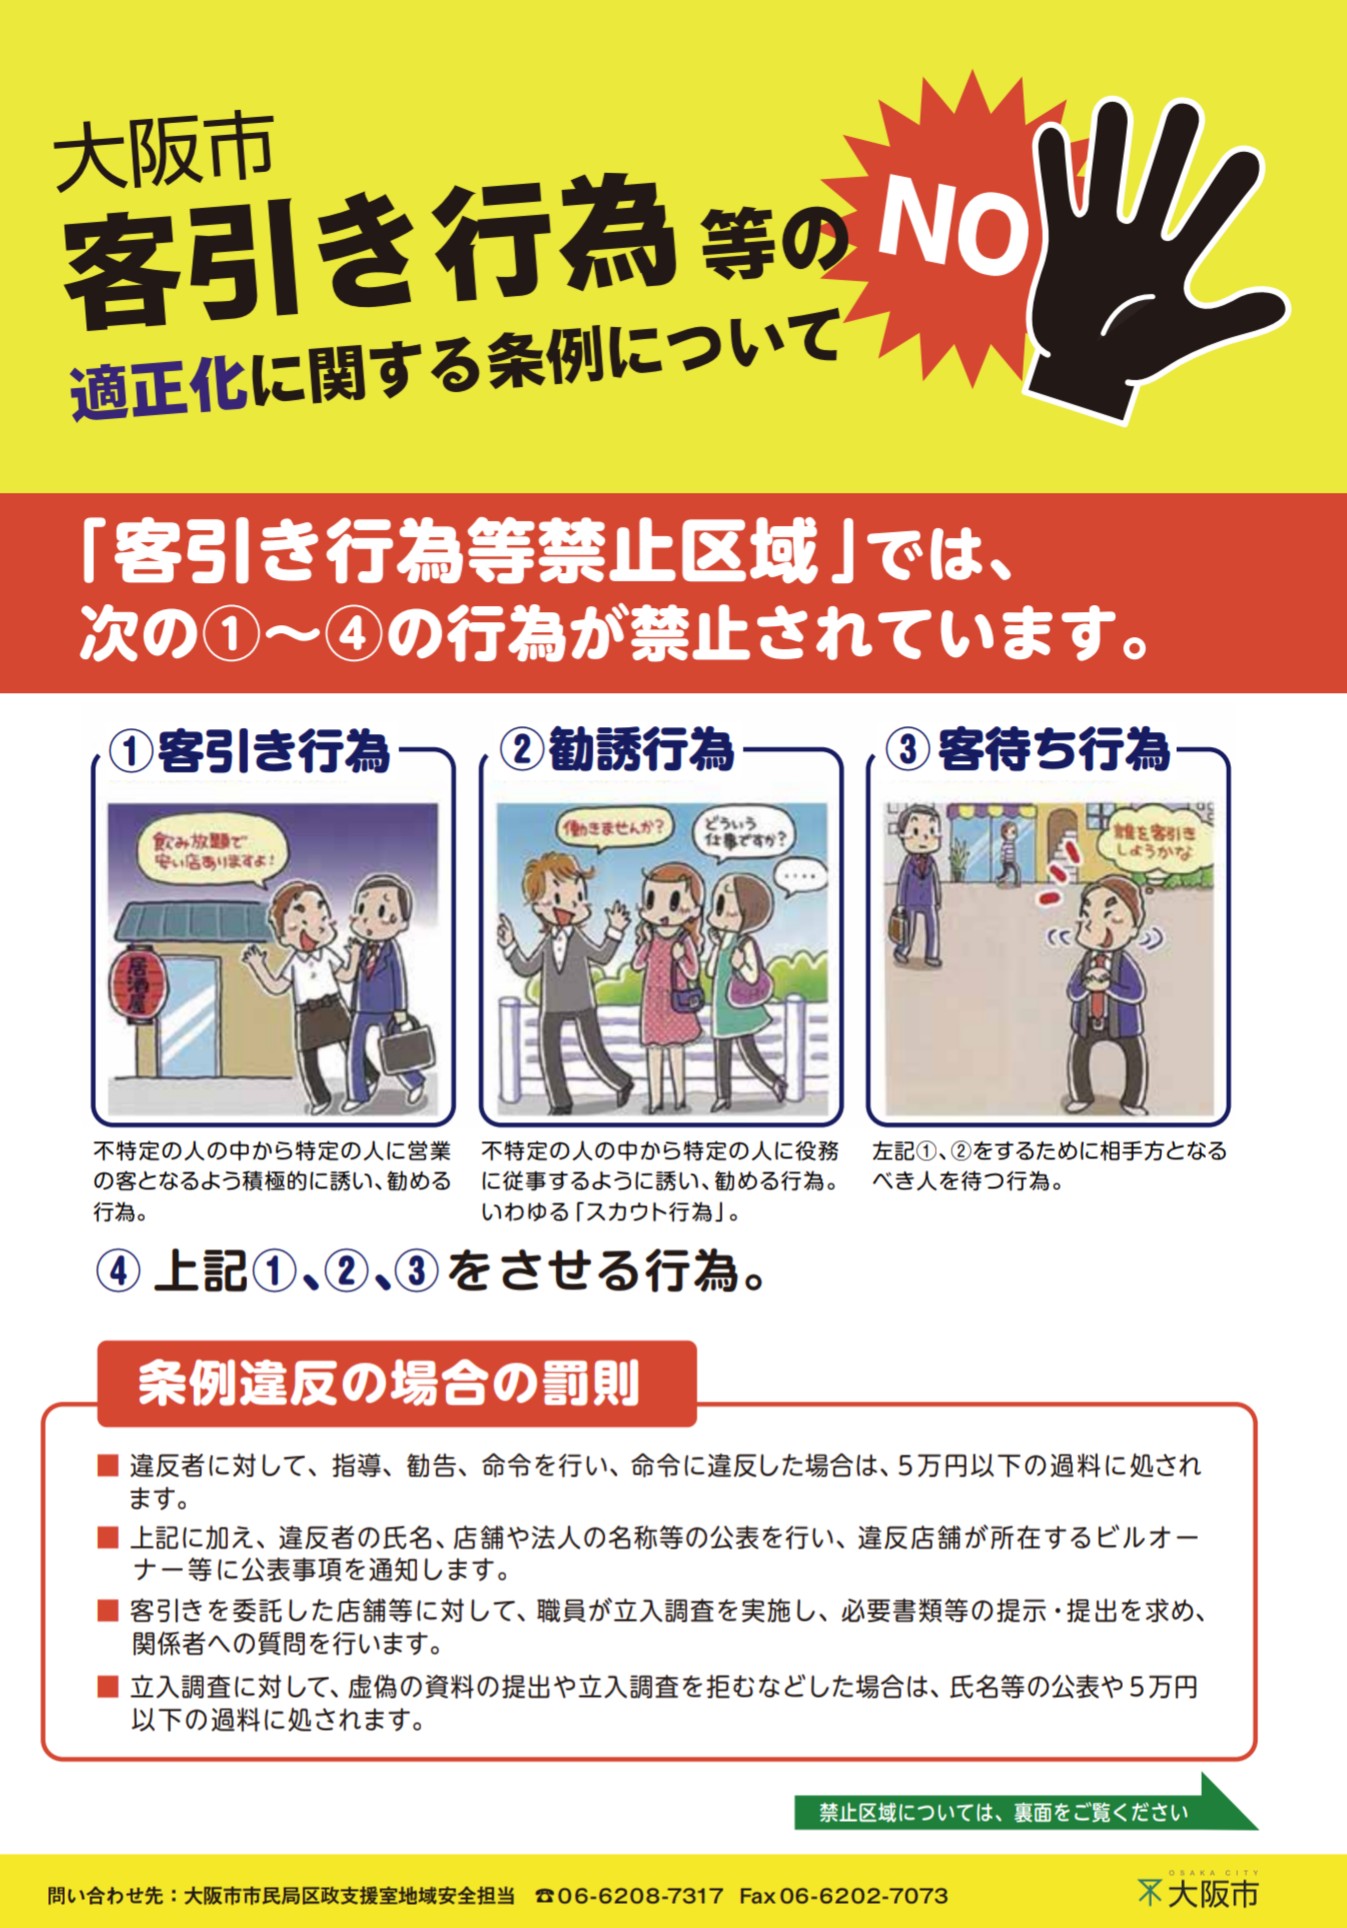 キタ地区 北区 及びミナミ地区 大阪市客引き行為等禁止区域 を新たに指定します 大阪キタじゃーなる